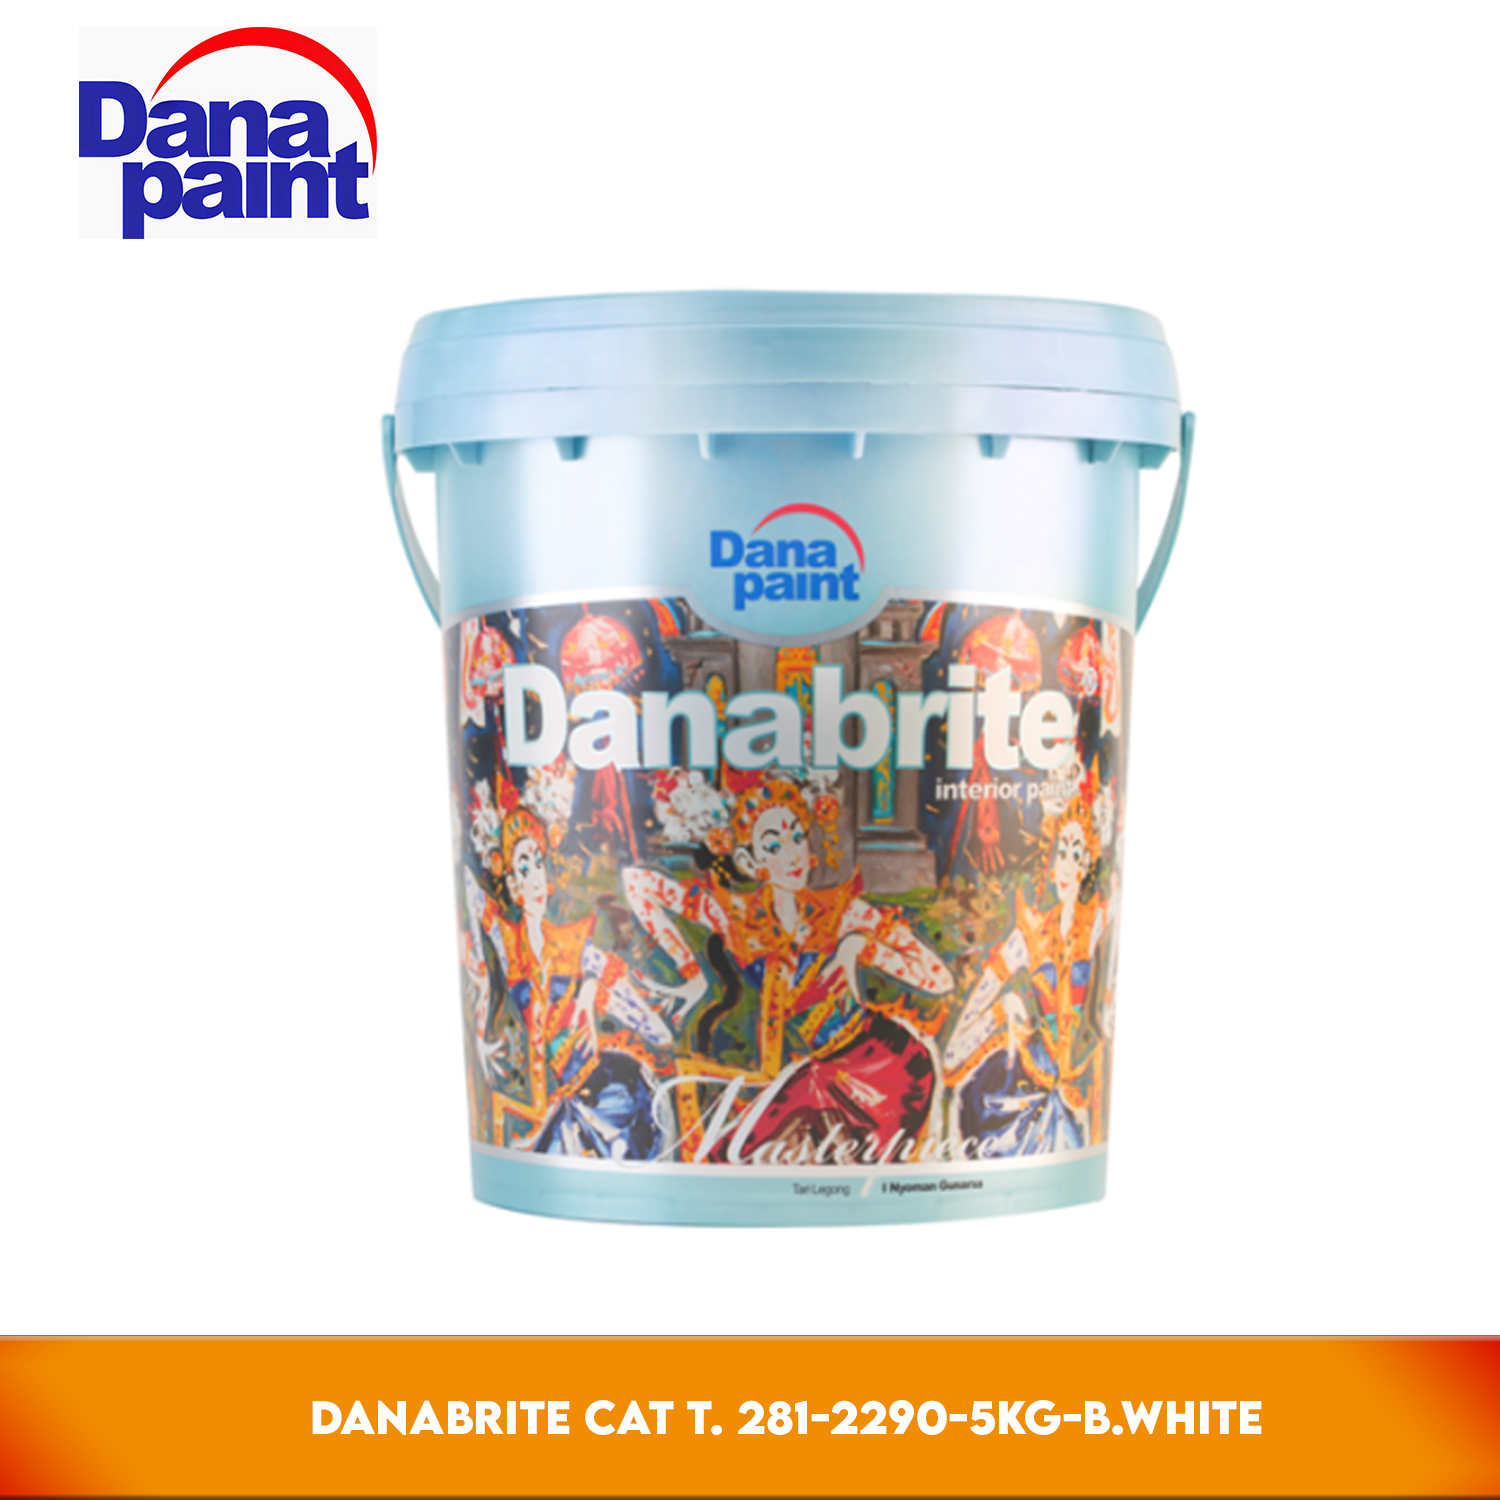 Danabrite Cat Tembok White 5kg Dana Paint